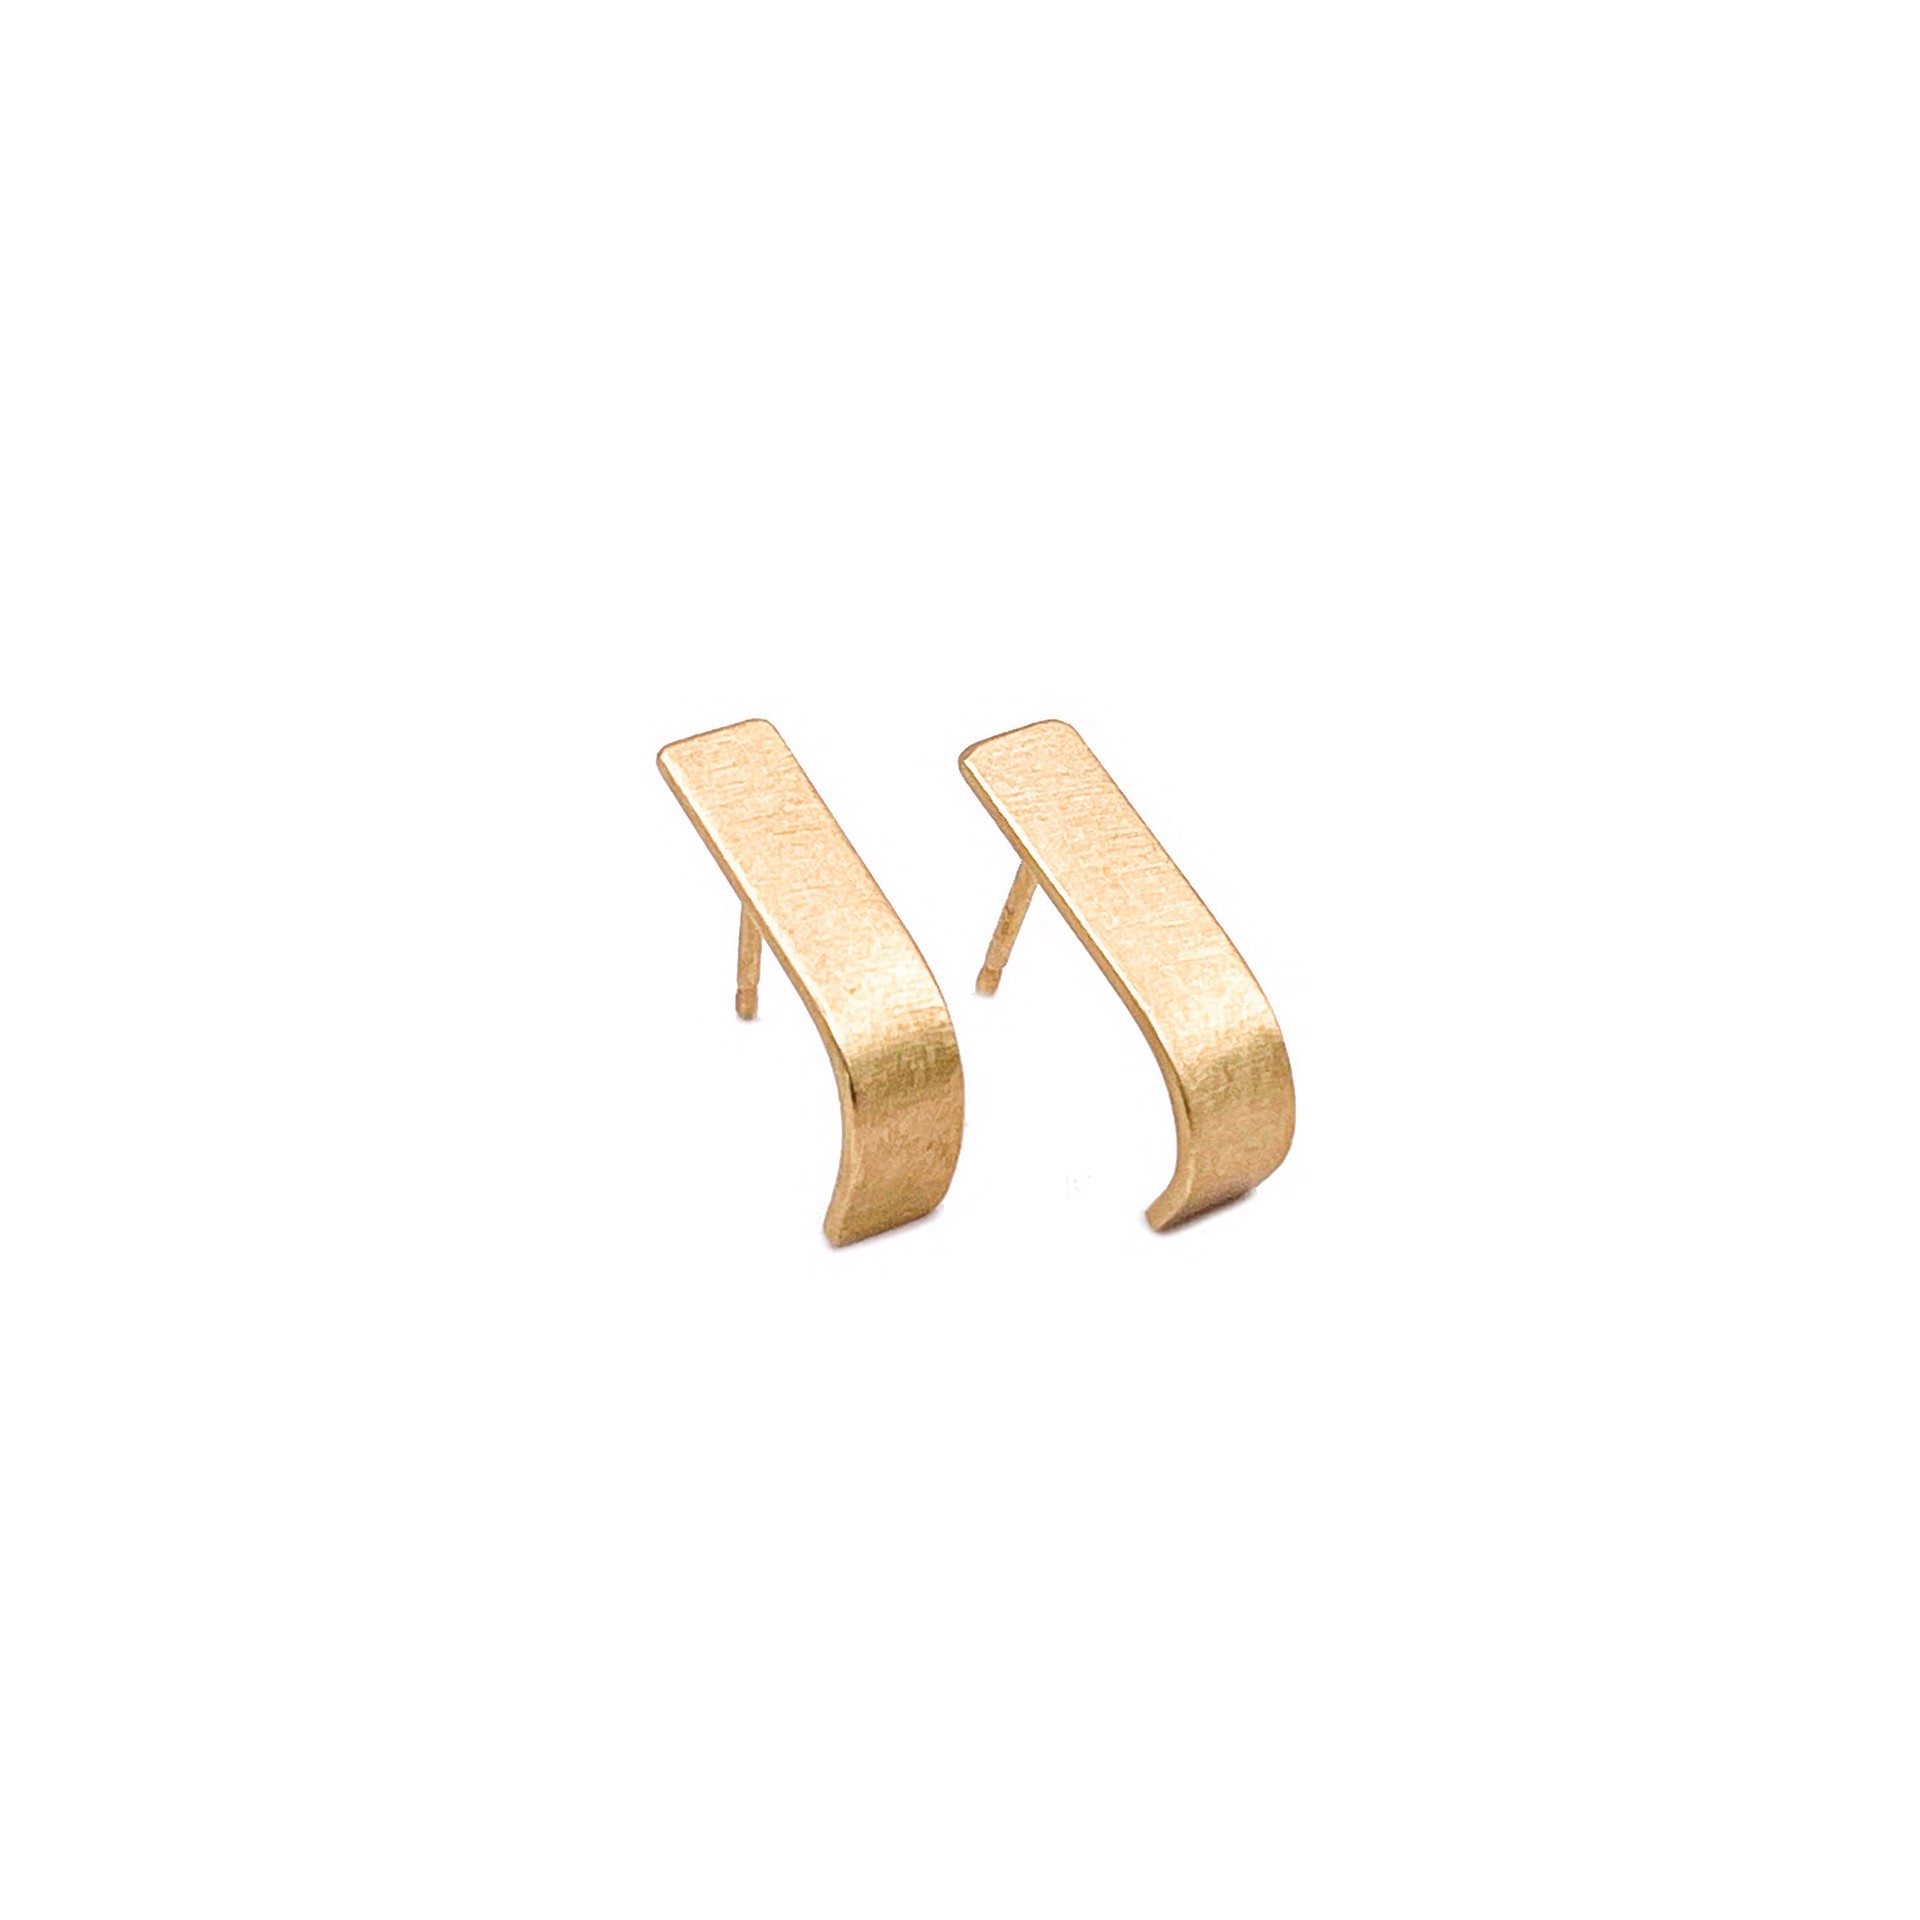 LHE14- Slope Hoop Earrings, 18K by Leandra Hill